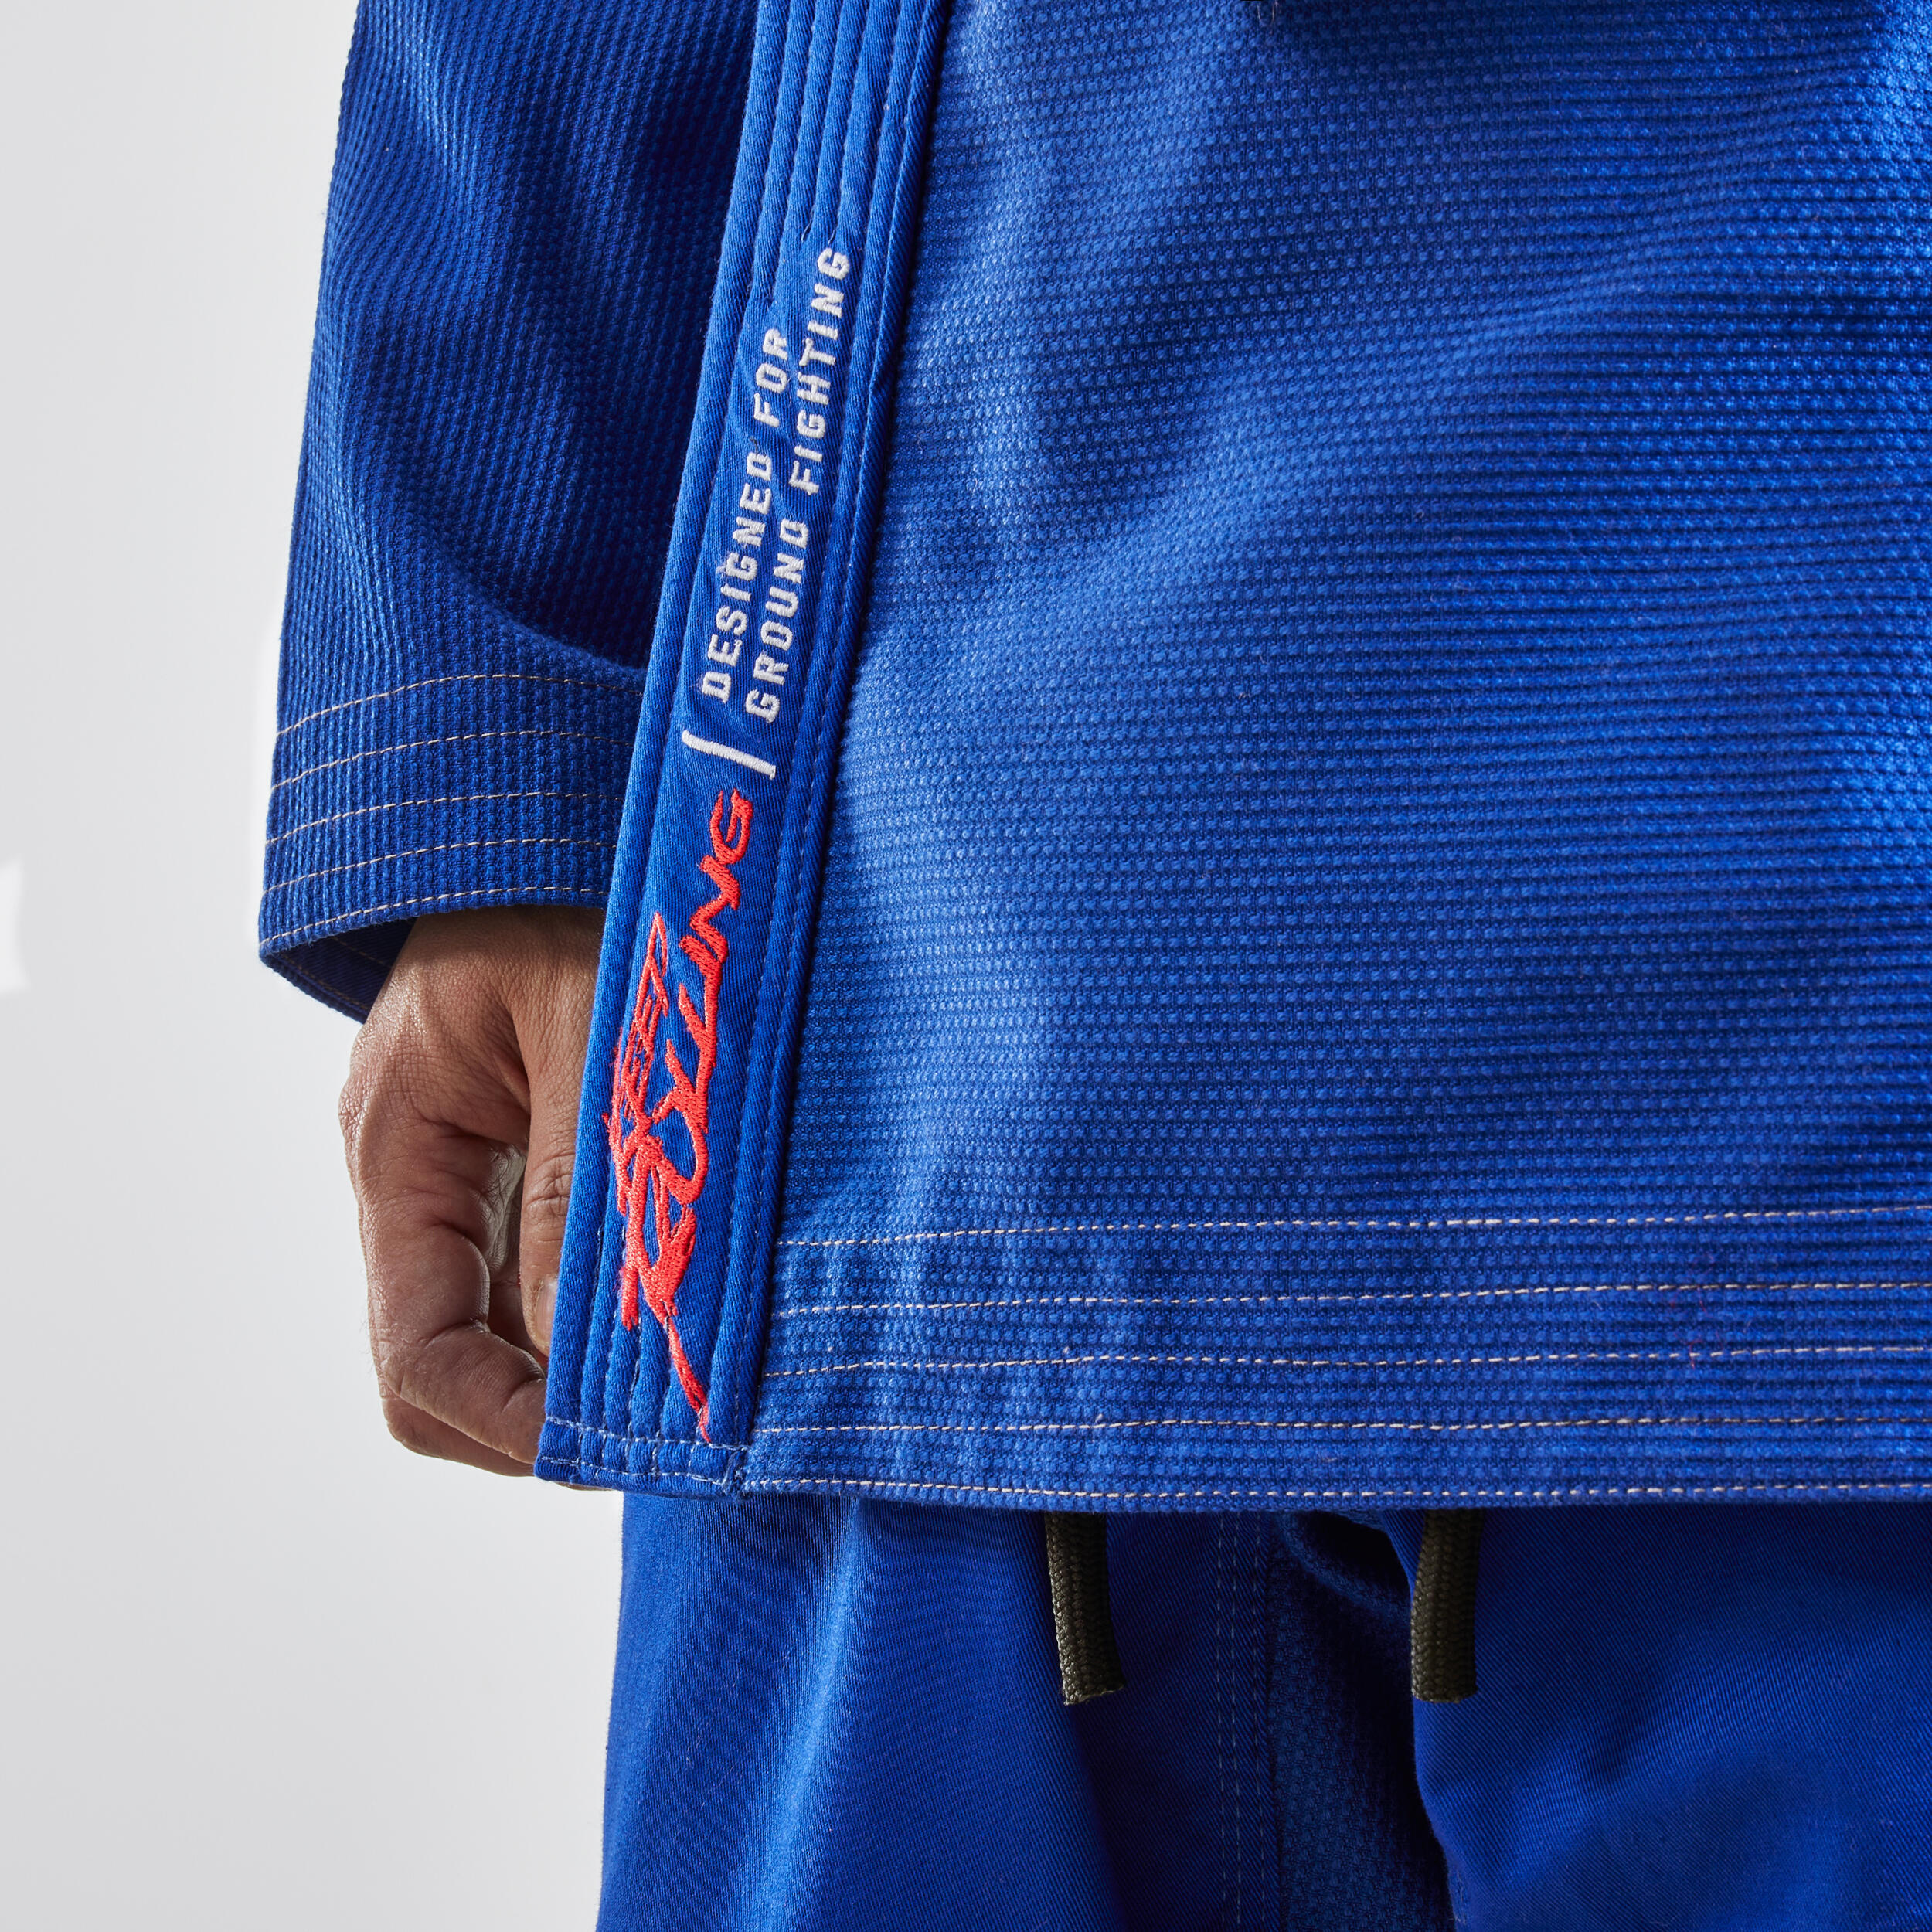 500 Brazilian Jiu-Jitsu Adult Uniform - Blue 5/9